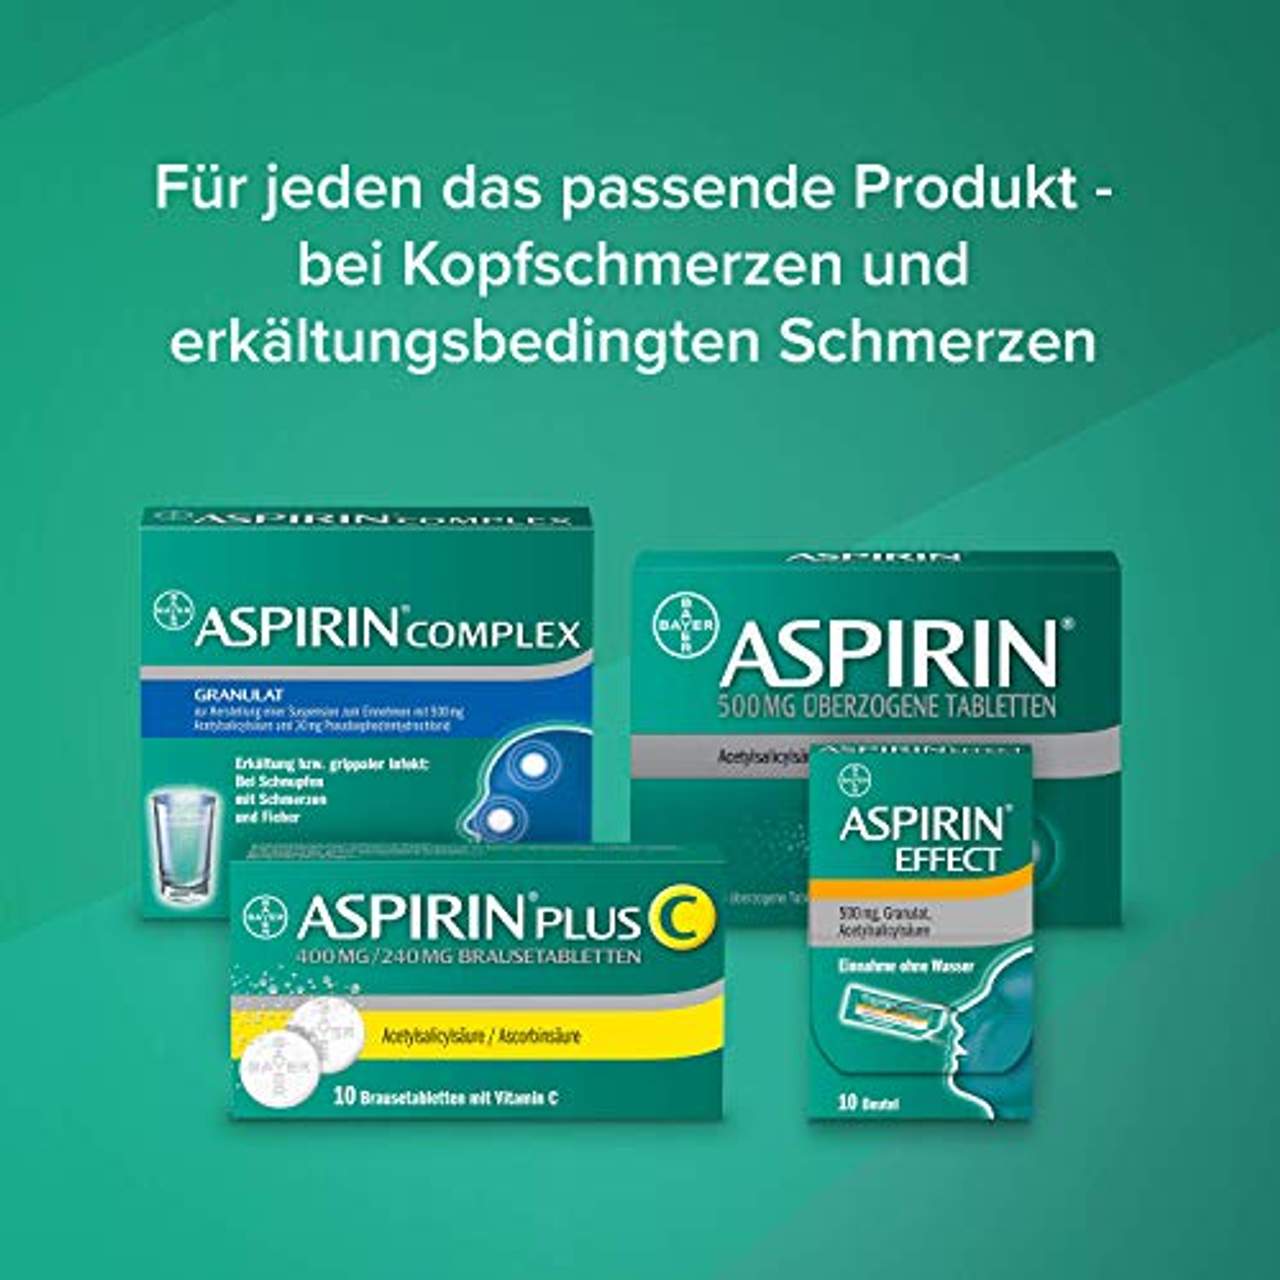 Aspirin Complex befreit von Schnupfen und lindert schnell Erkältungsschmerzen